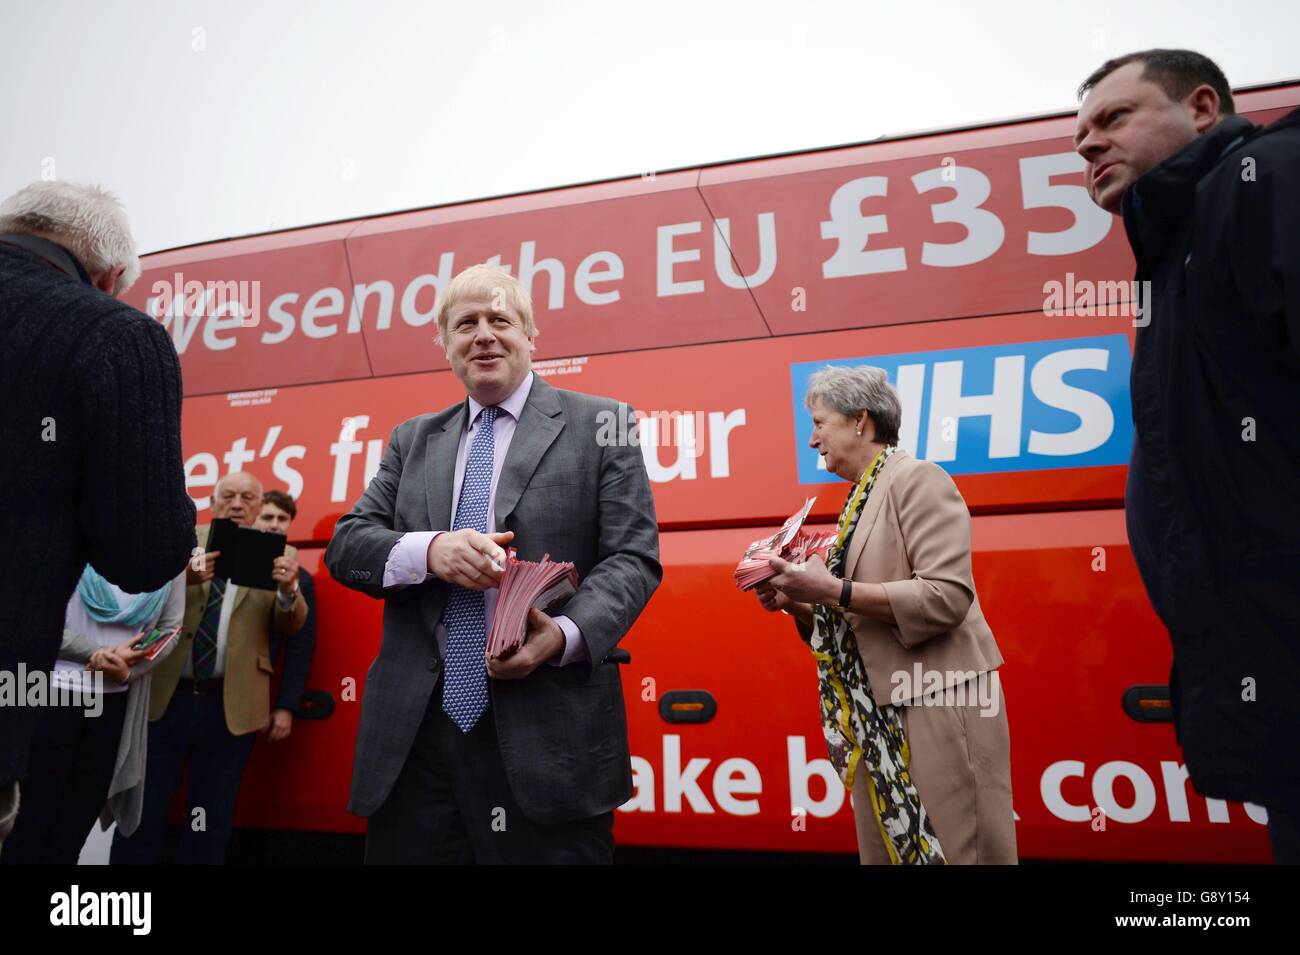 L'ex sindaco di Londra Boris Johnson parla di voto Lascia attivisti mentre fa parte della campagna di voto lasciare bus a Truro, Cornovaglia, In vista del suo viaggio inaugurale che attraverserà il paese nelle prossime settimane per portare il messaggio Brexit in tutti gli angoli del Regno Unito prima del referendum del 23 giugno. Foto Stock